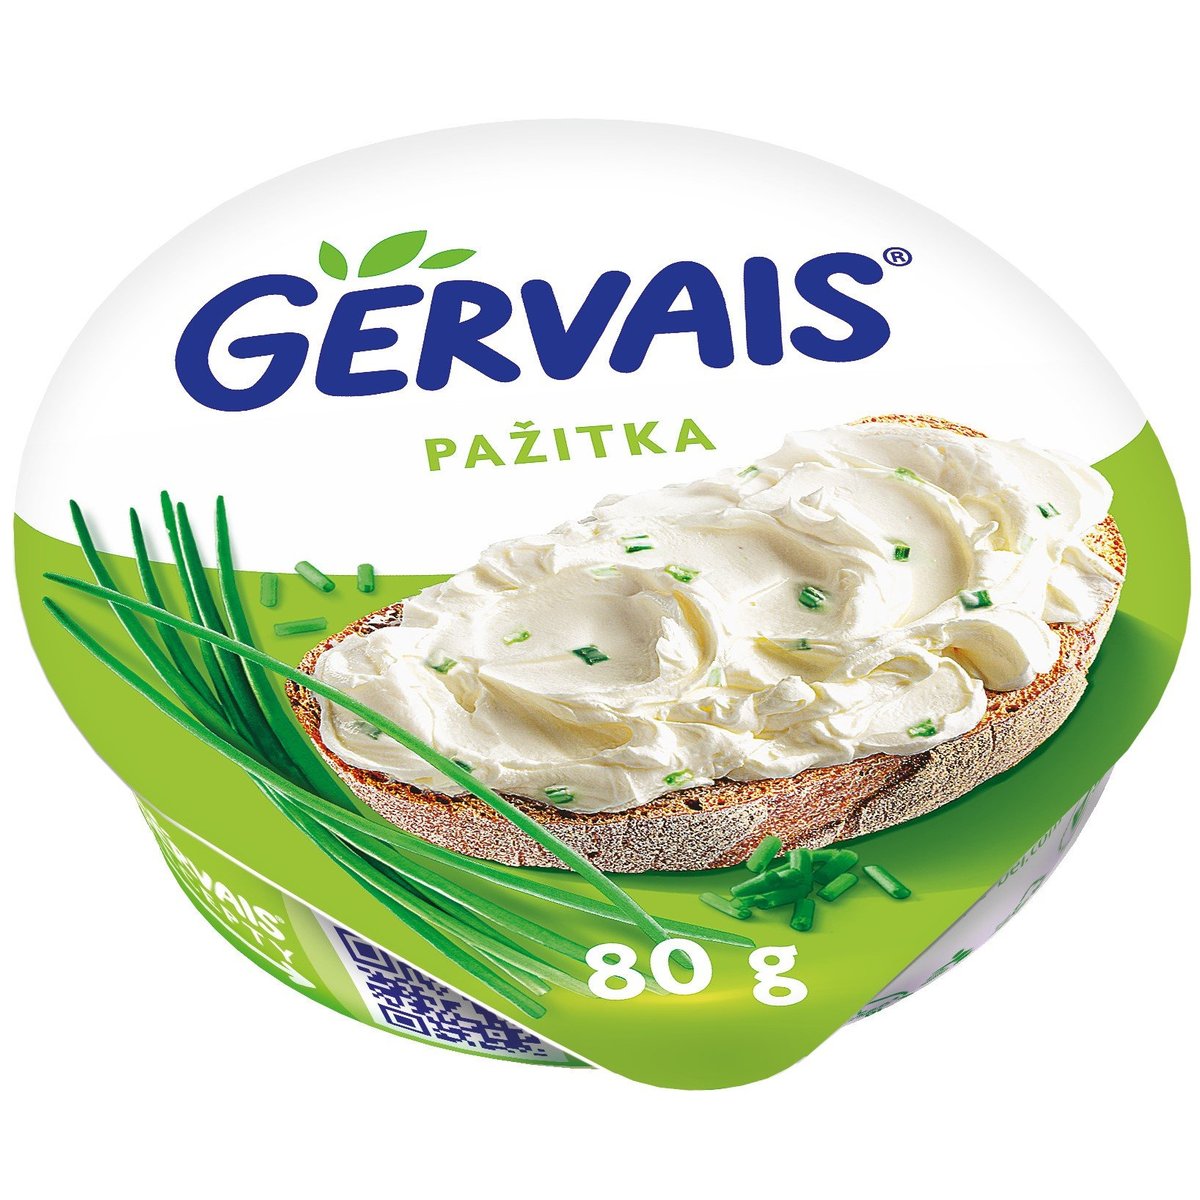 Gervais Original krémový tvarohový sýr s pažitkou